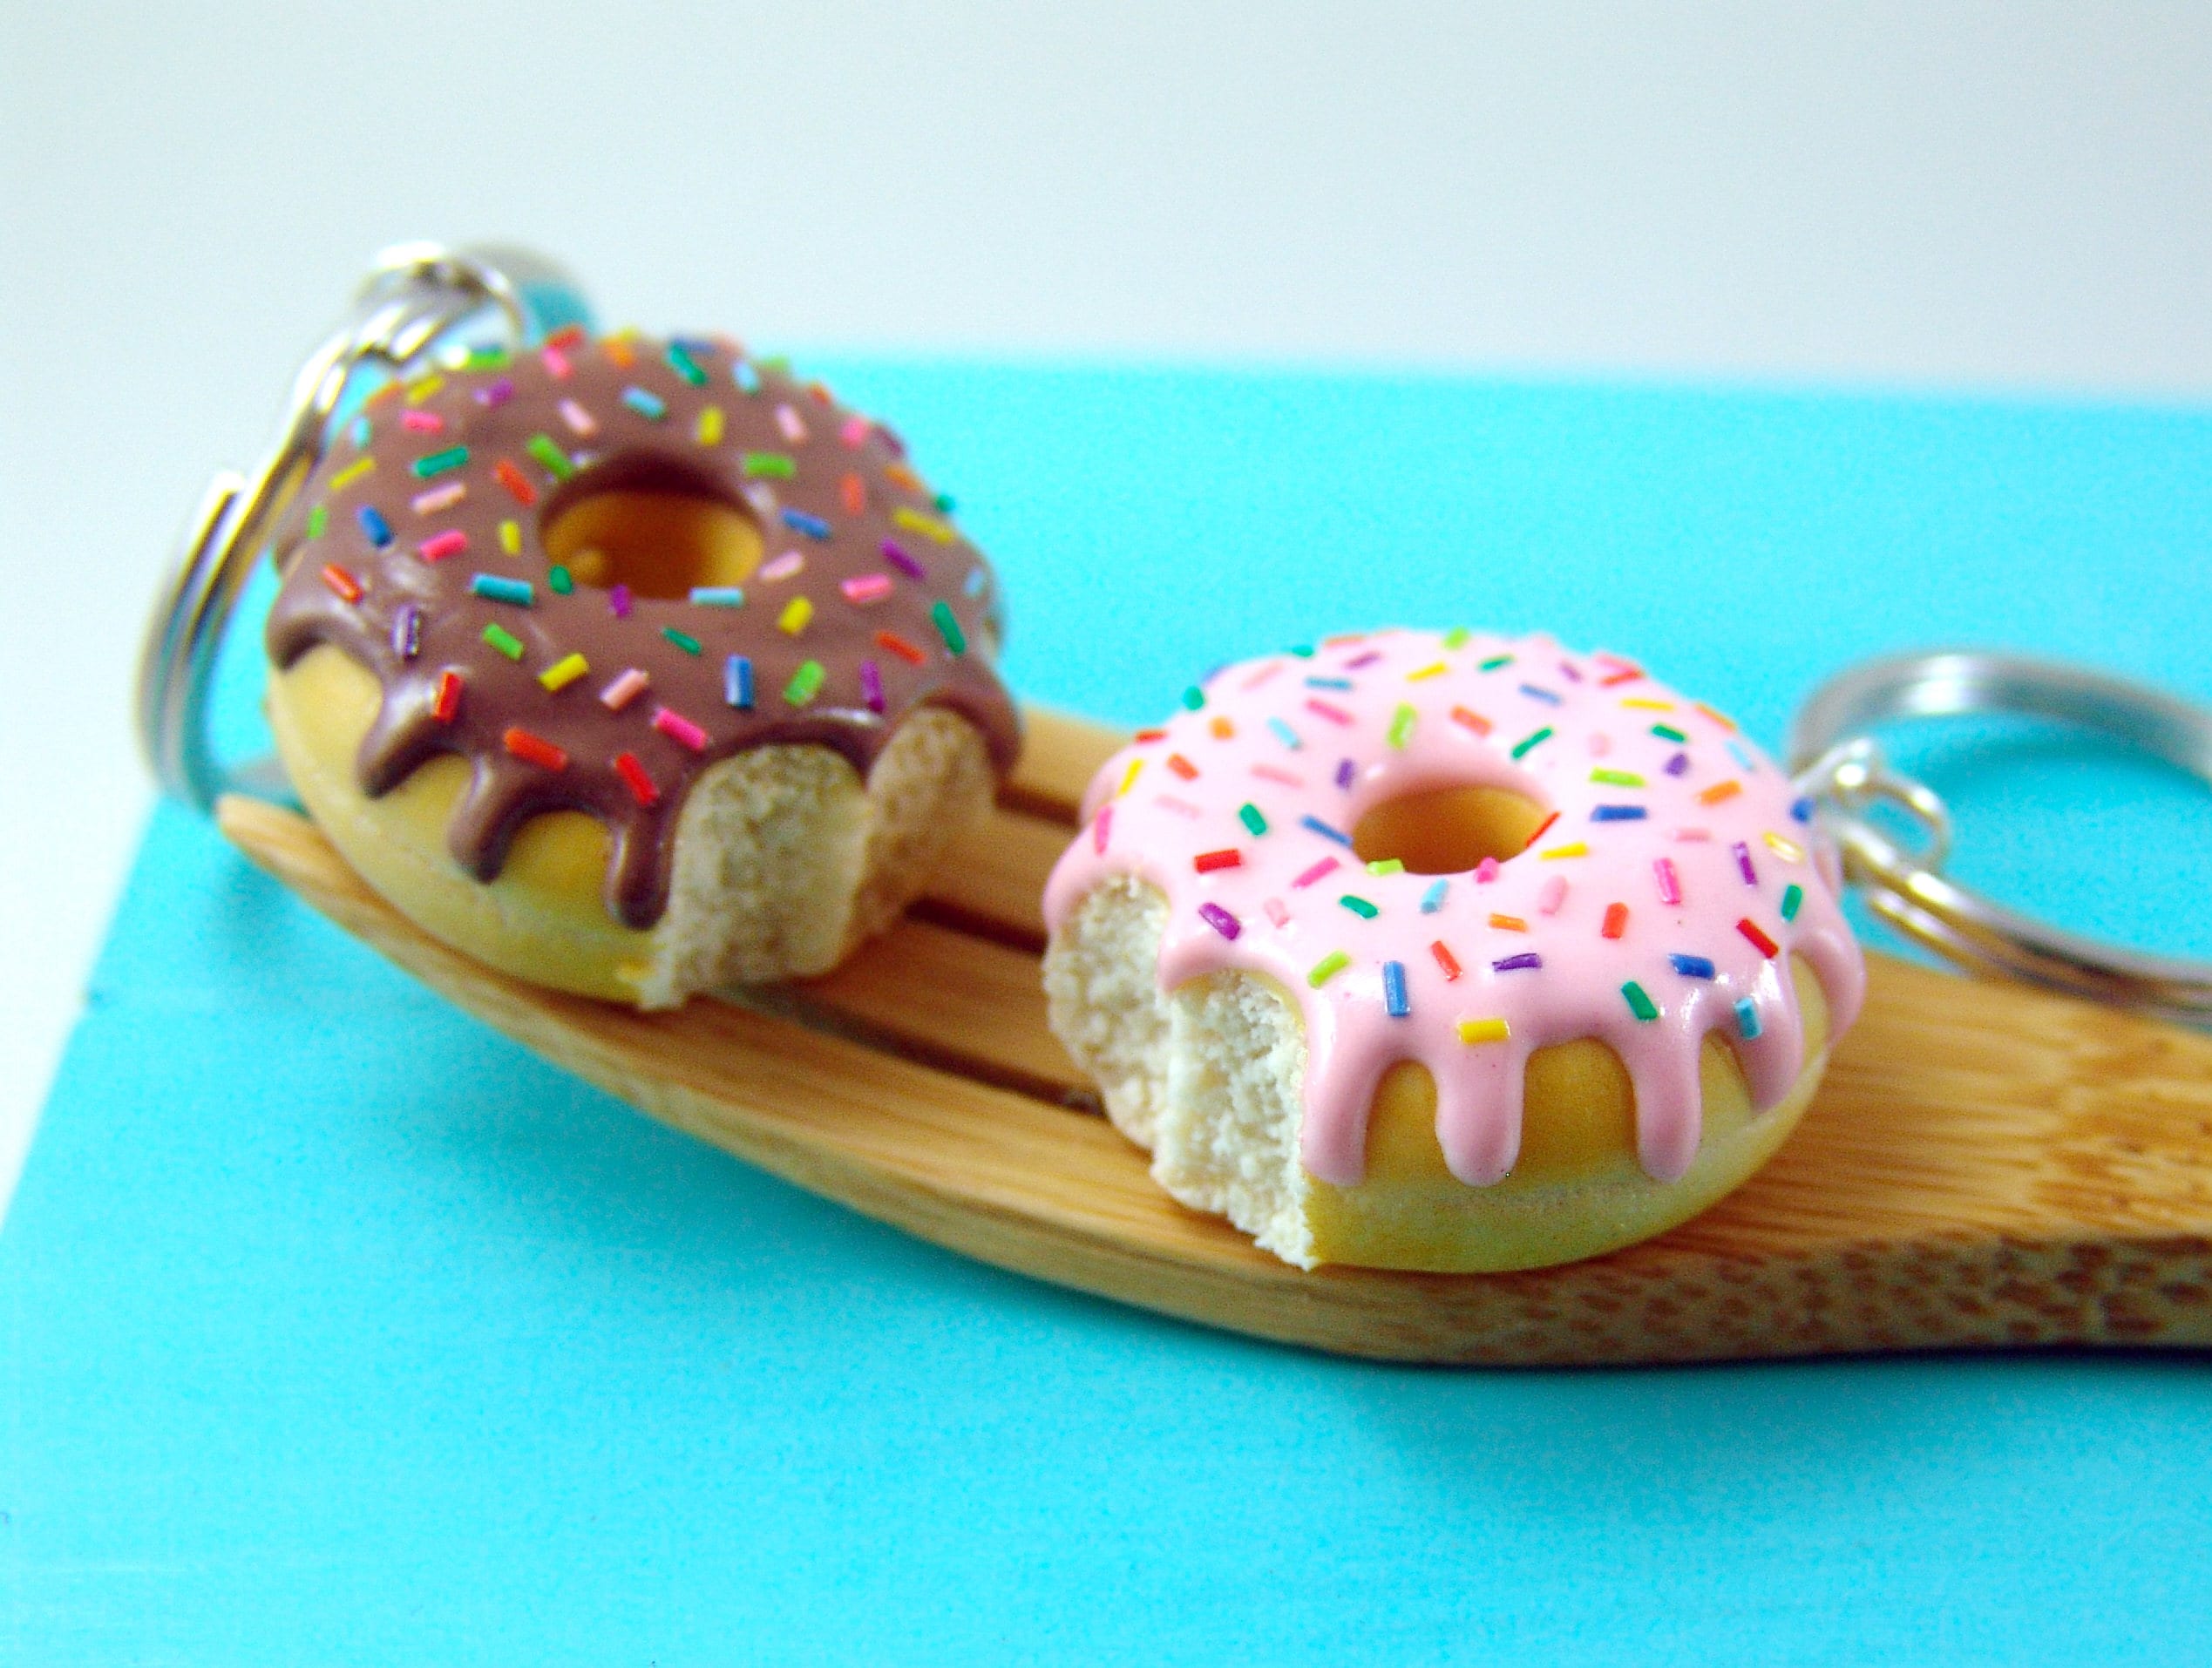 Bijoux de sac donuts, porte clé donut Fimo, gros donut chocolat et pépites  multicolores